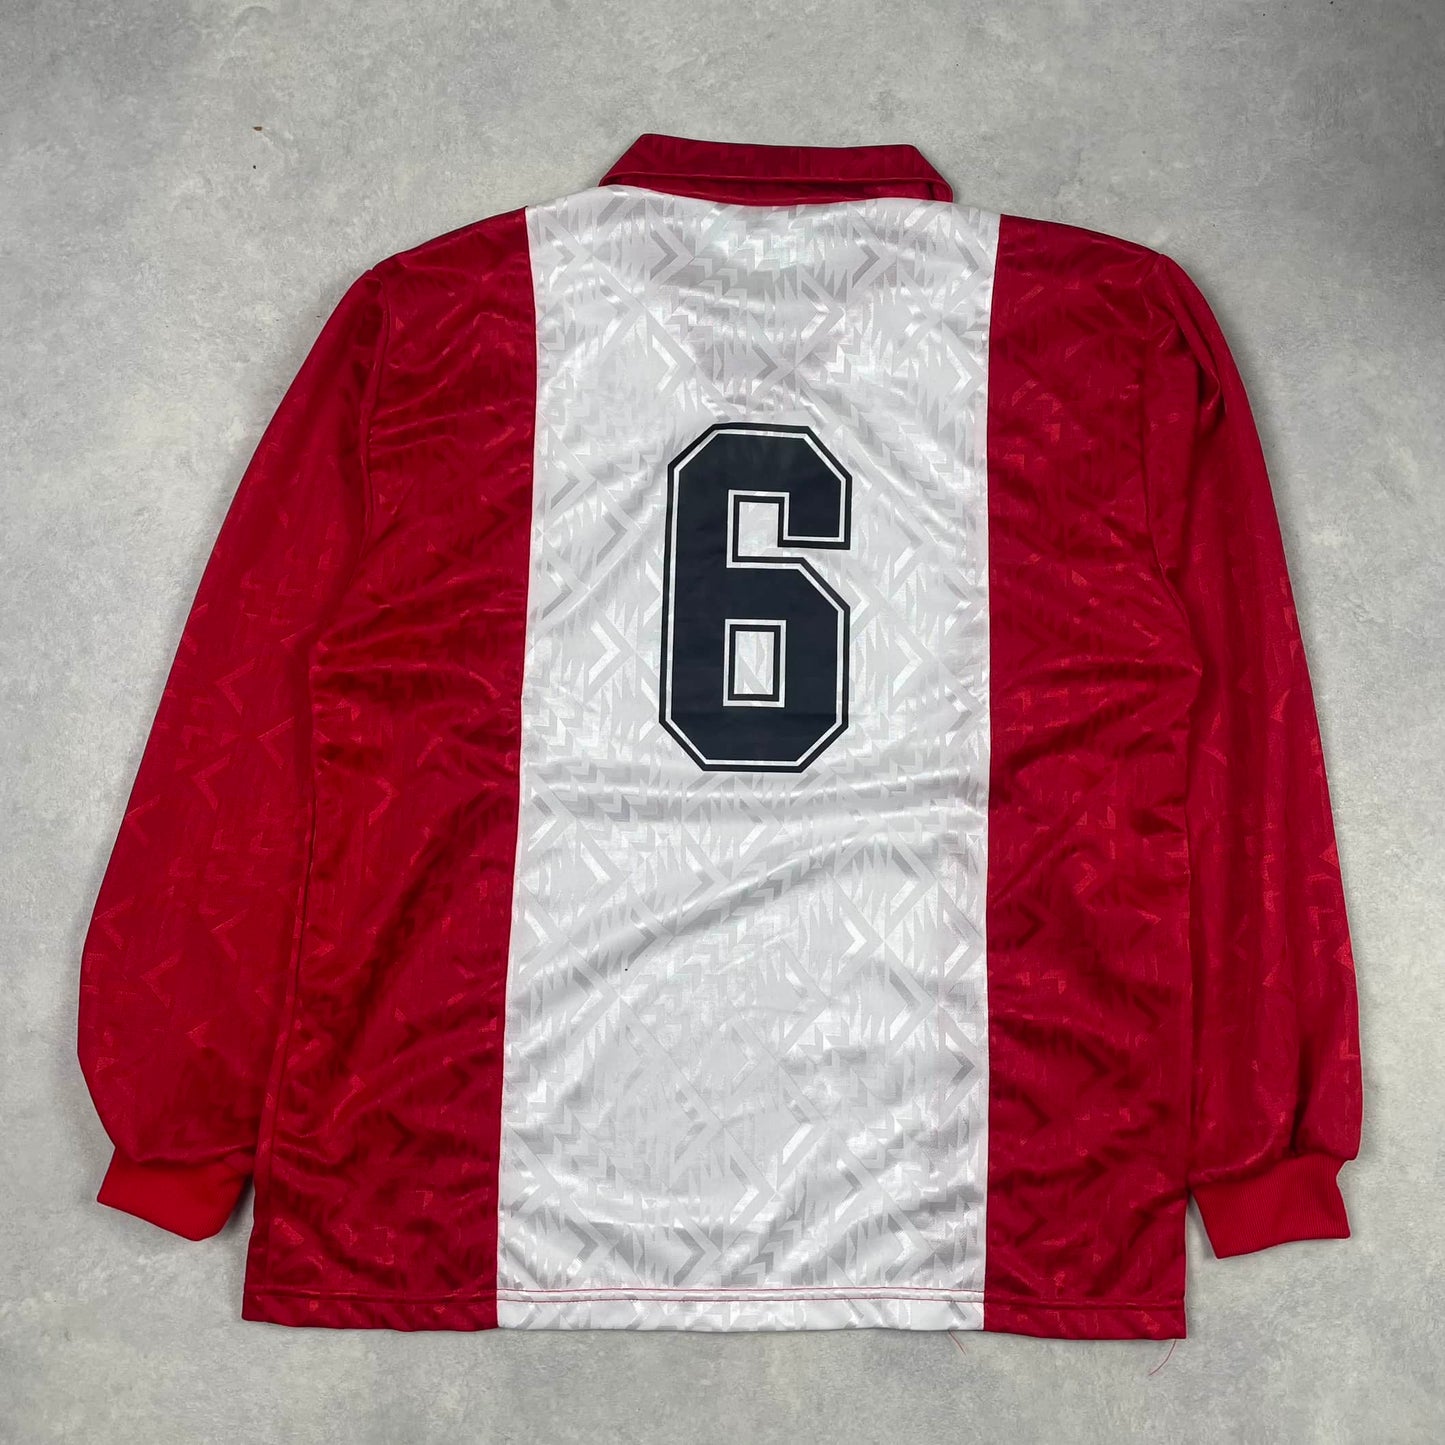 Vintage Italian Soccer Shirt Red White